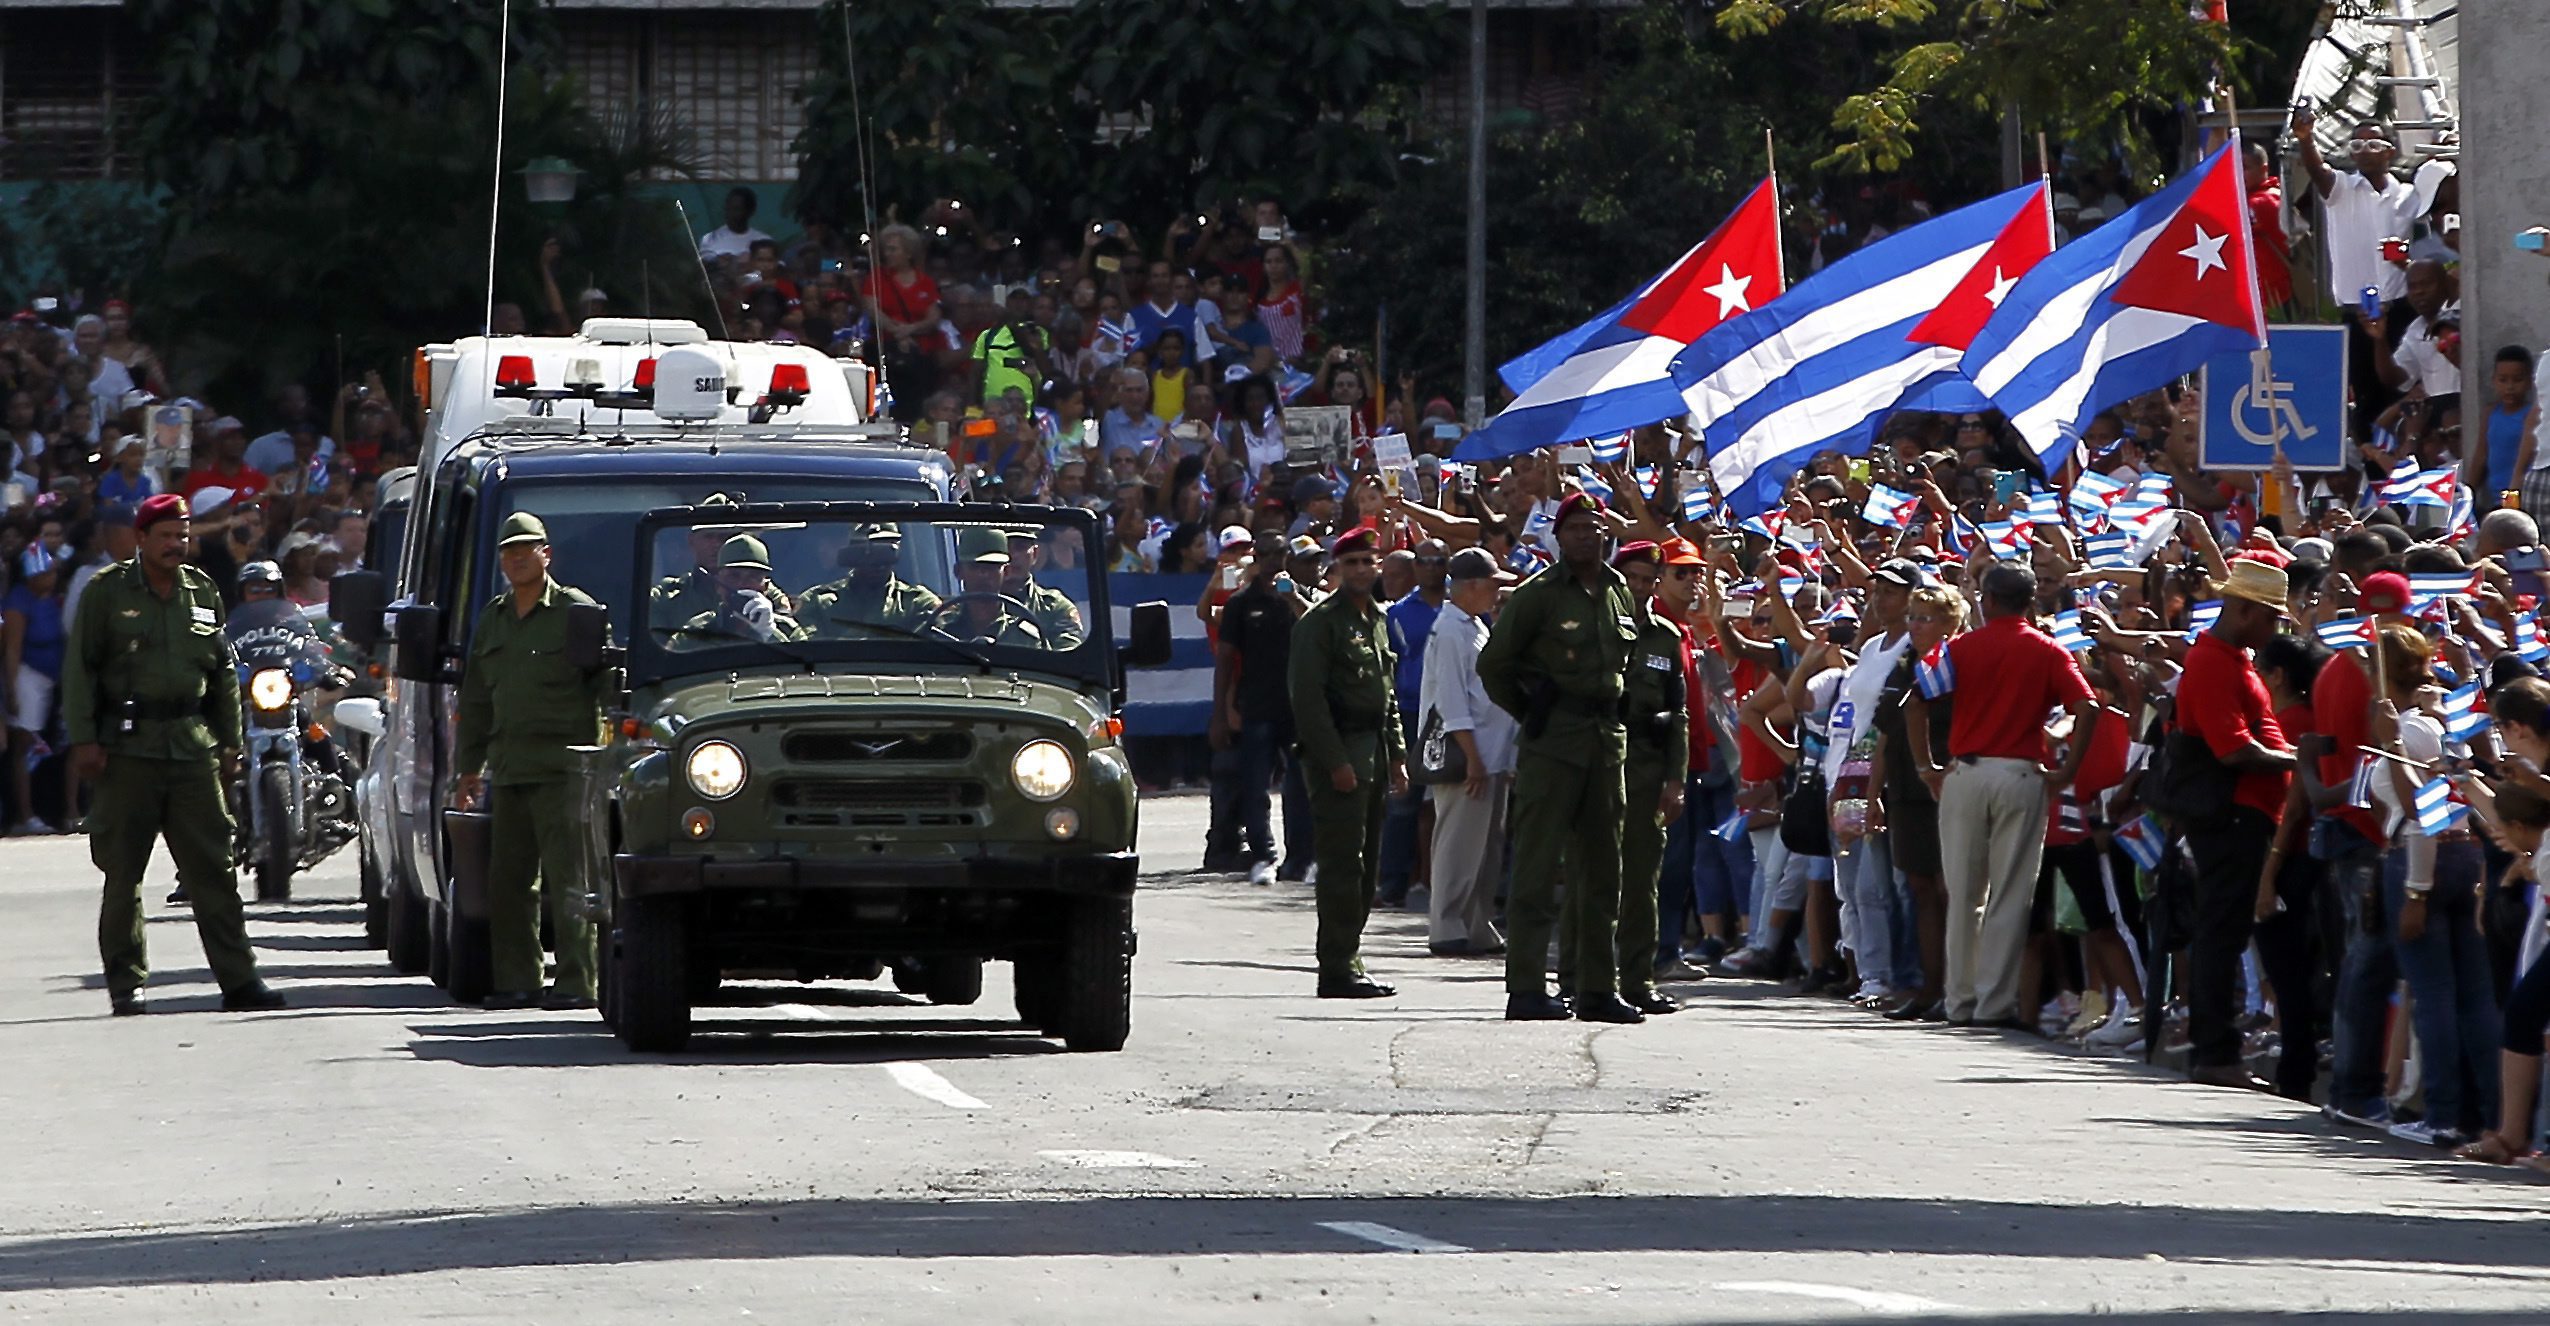 Близо половин милион кубинци се събраха на главния площад в гр. Сантяго де Куба, за да се простят с Фидел Кастро. Траурната церемония водеше лидерът и брат на покойния Раул Кастро, който се закле да пази революцията след Фидел. За да отдадат почит към бащата на кубинската революция, пристигнаха редица лидери от Латинска Америка - венецуелският президент Николас Мадуро, никарагуанският Даниел Ортега, боливийският Ево Моралес и двамата бивши бразилски президенти Лула да Силва и Дилма Русеф.